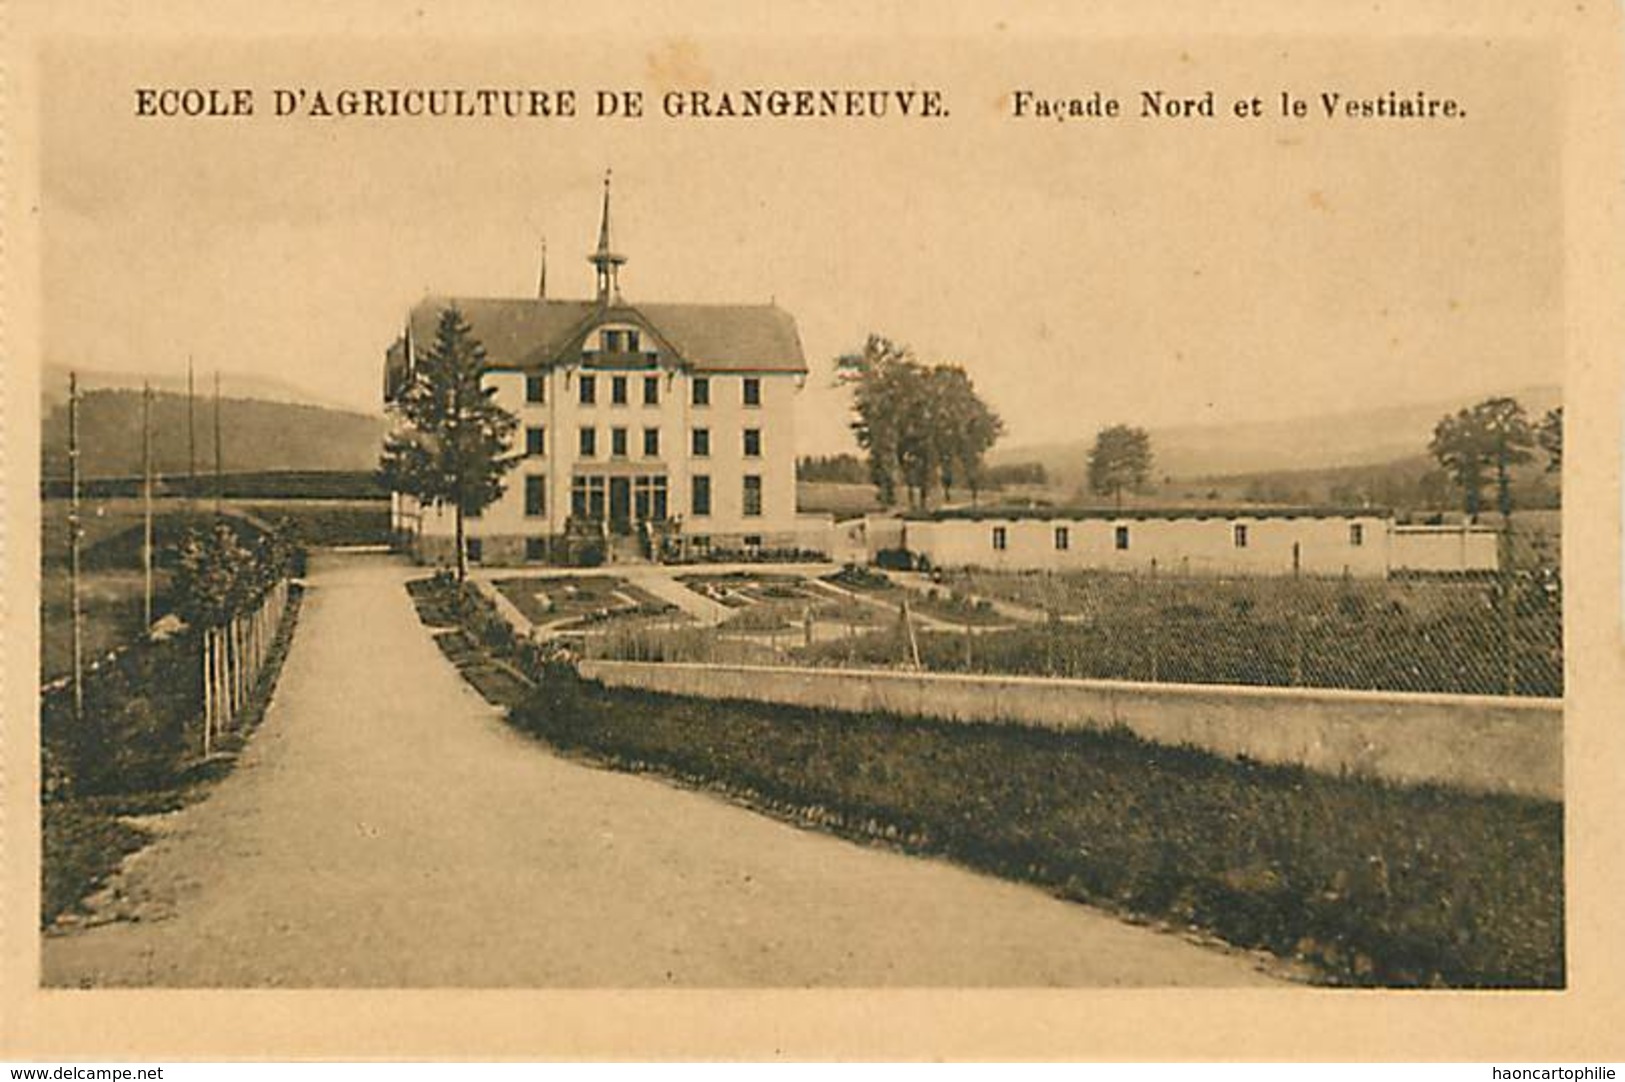 Ecole d'agriculture de Grangeneuve - lot de 12 cartes